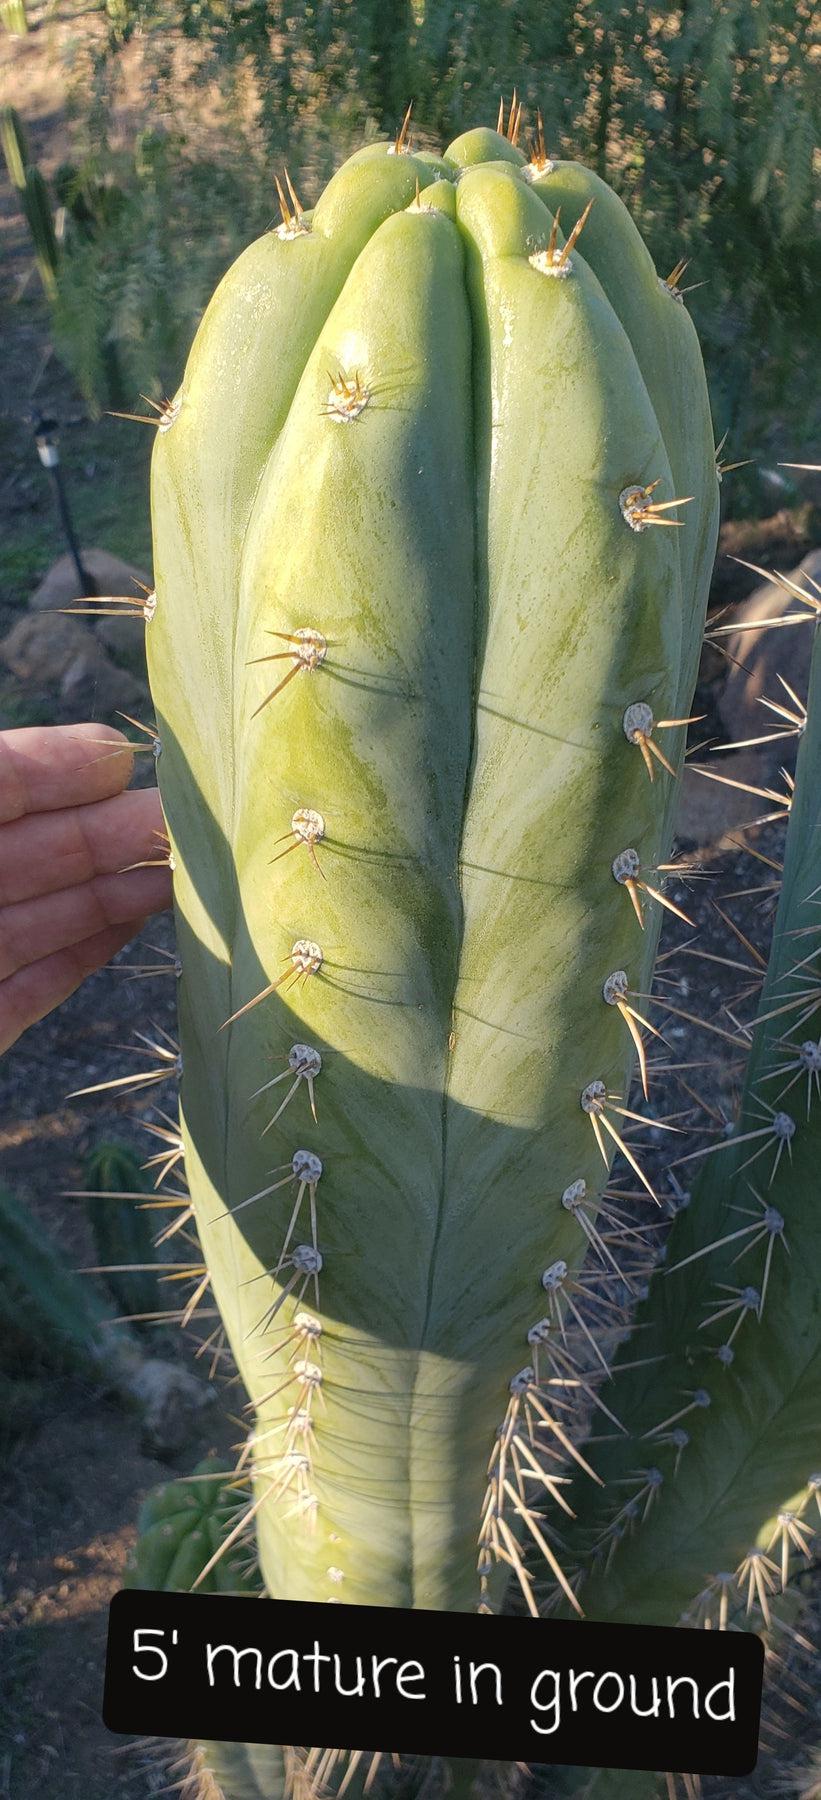 #EC45 EXACT Trichocereus Peruvianus "Storage Yard" Cactus CUTTING 6-7"-Cactus - Large - Exact-The Succulent Source